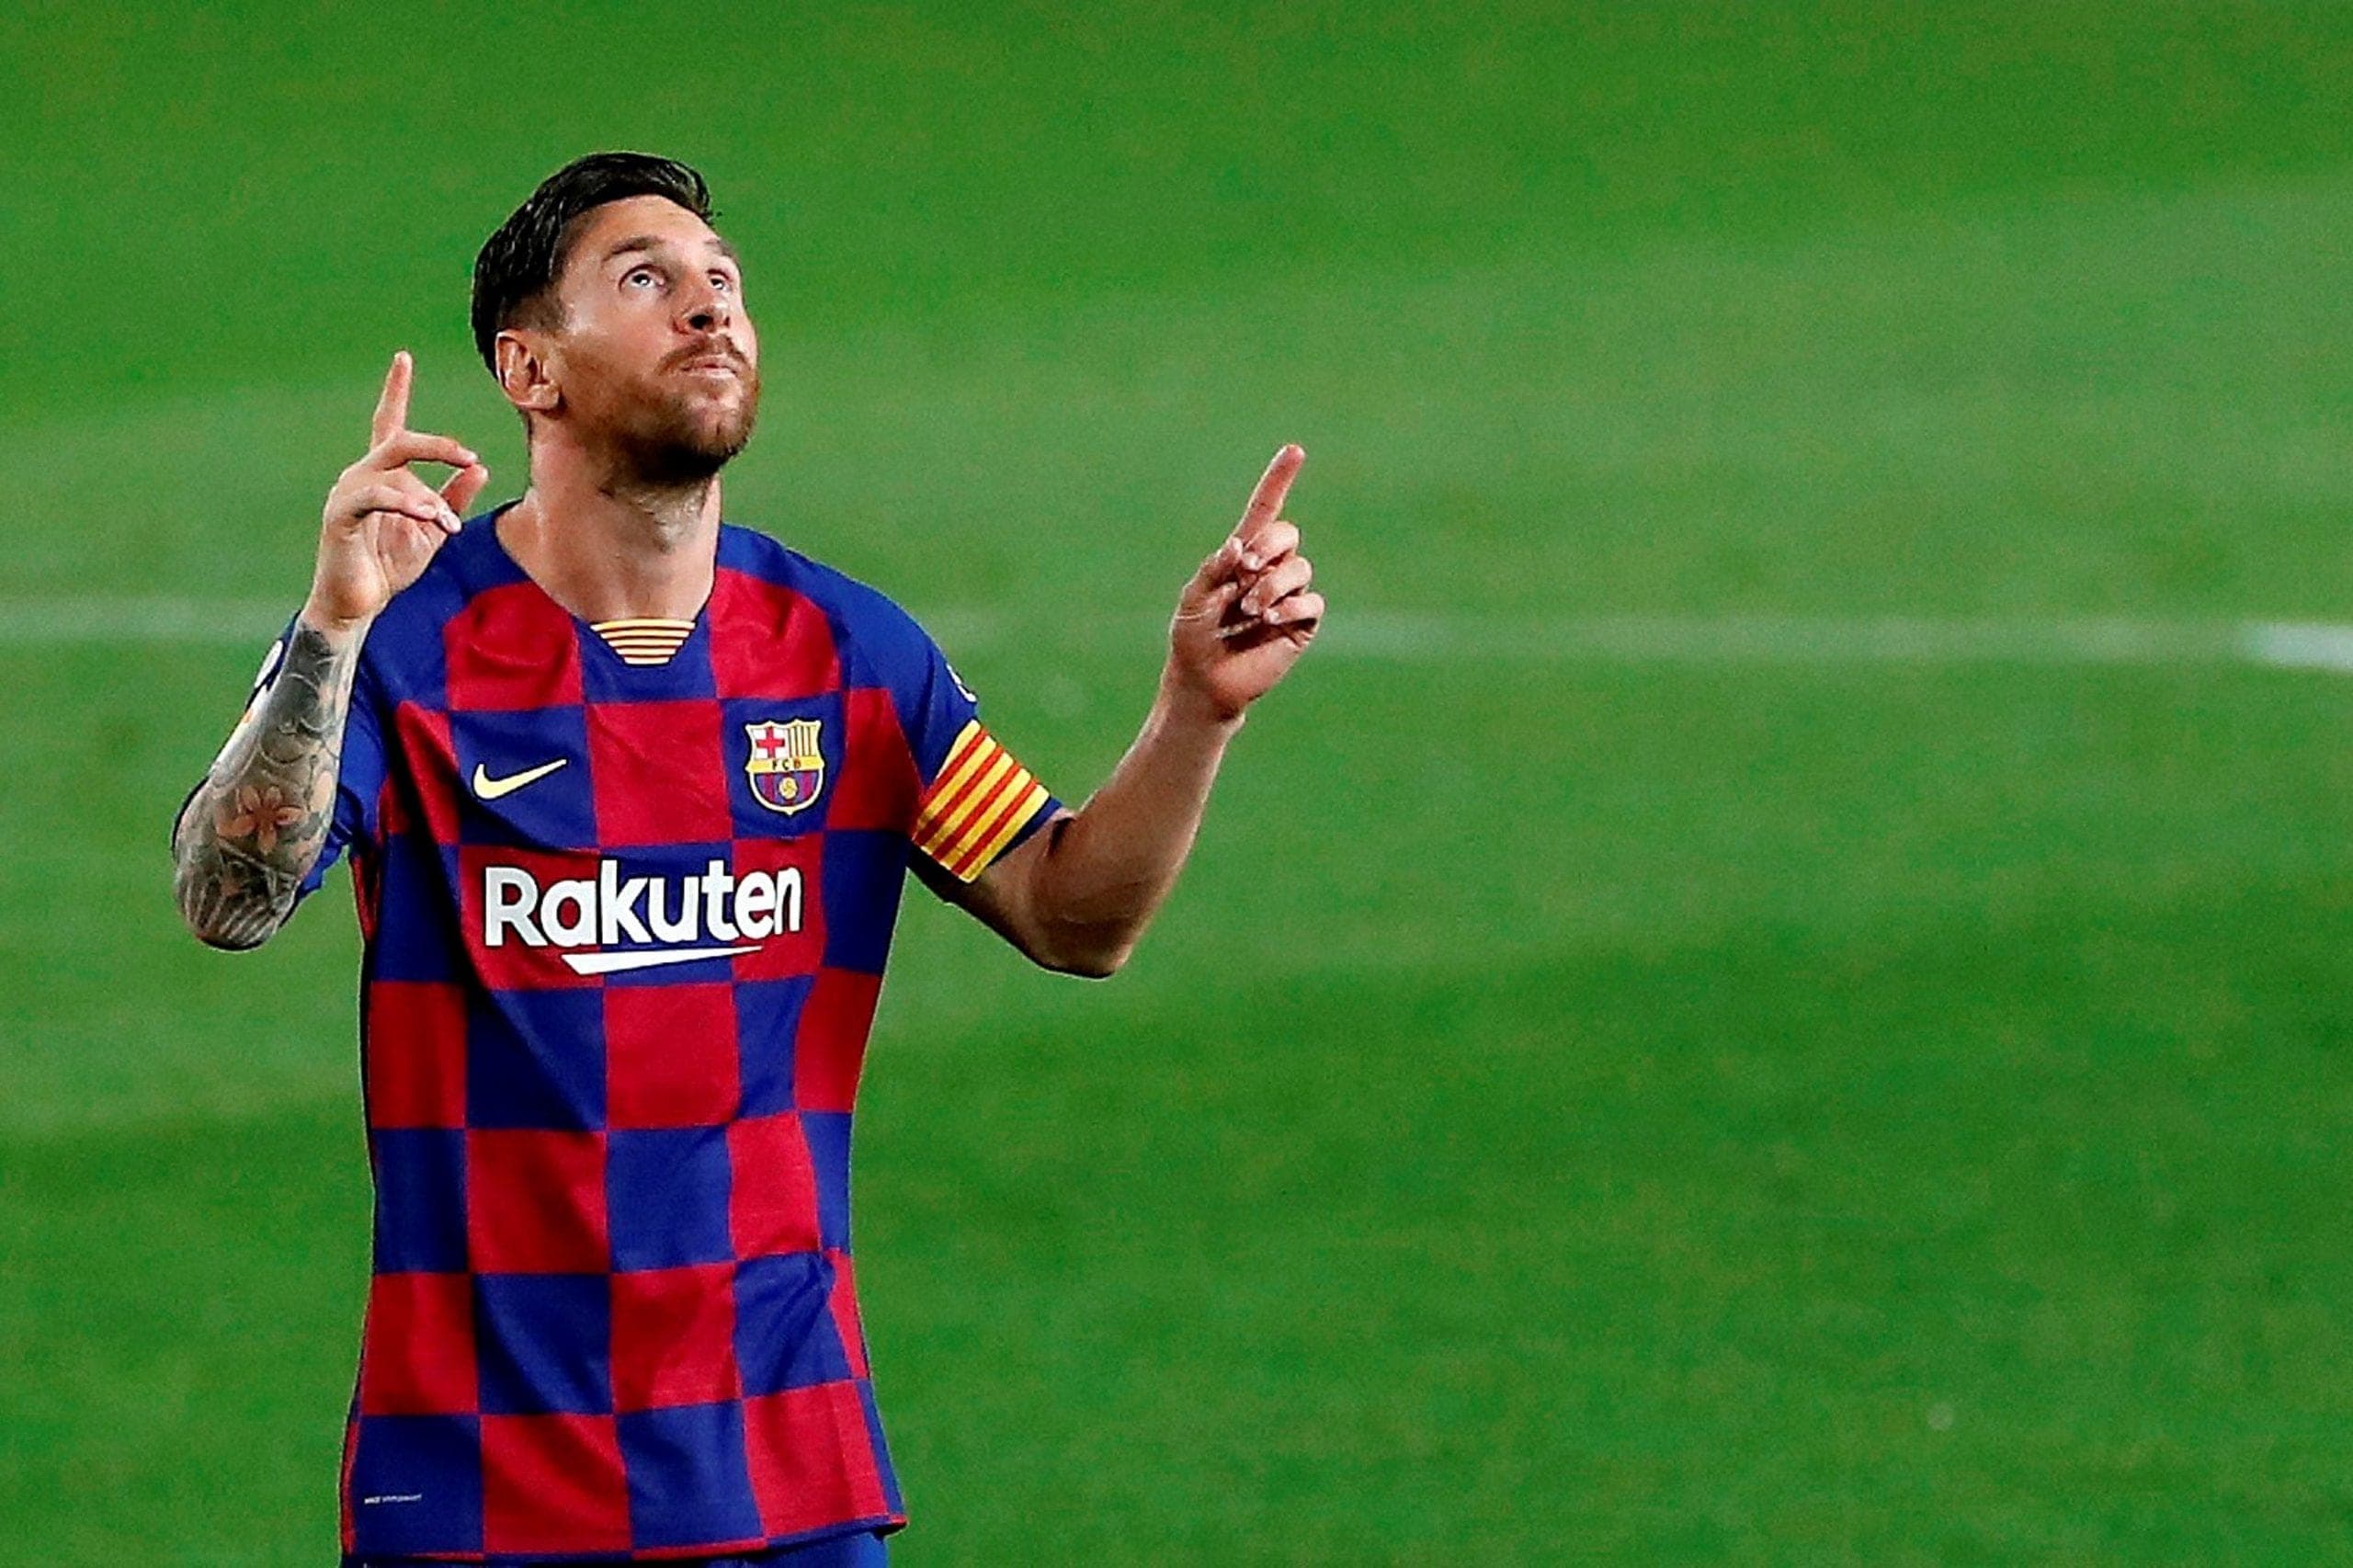 Cuánto valen los botines "récord" de Messi -